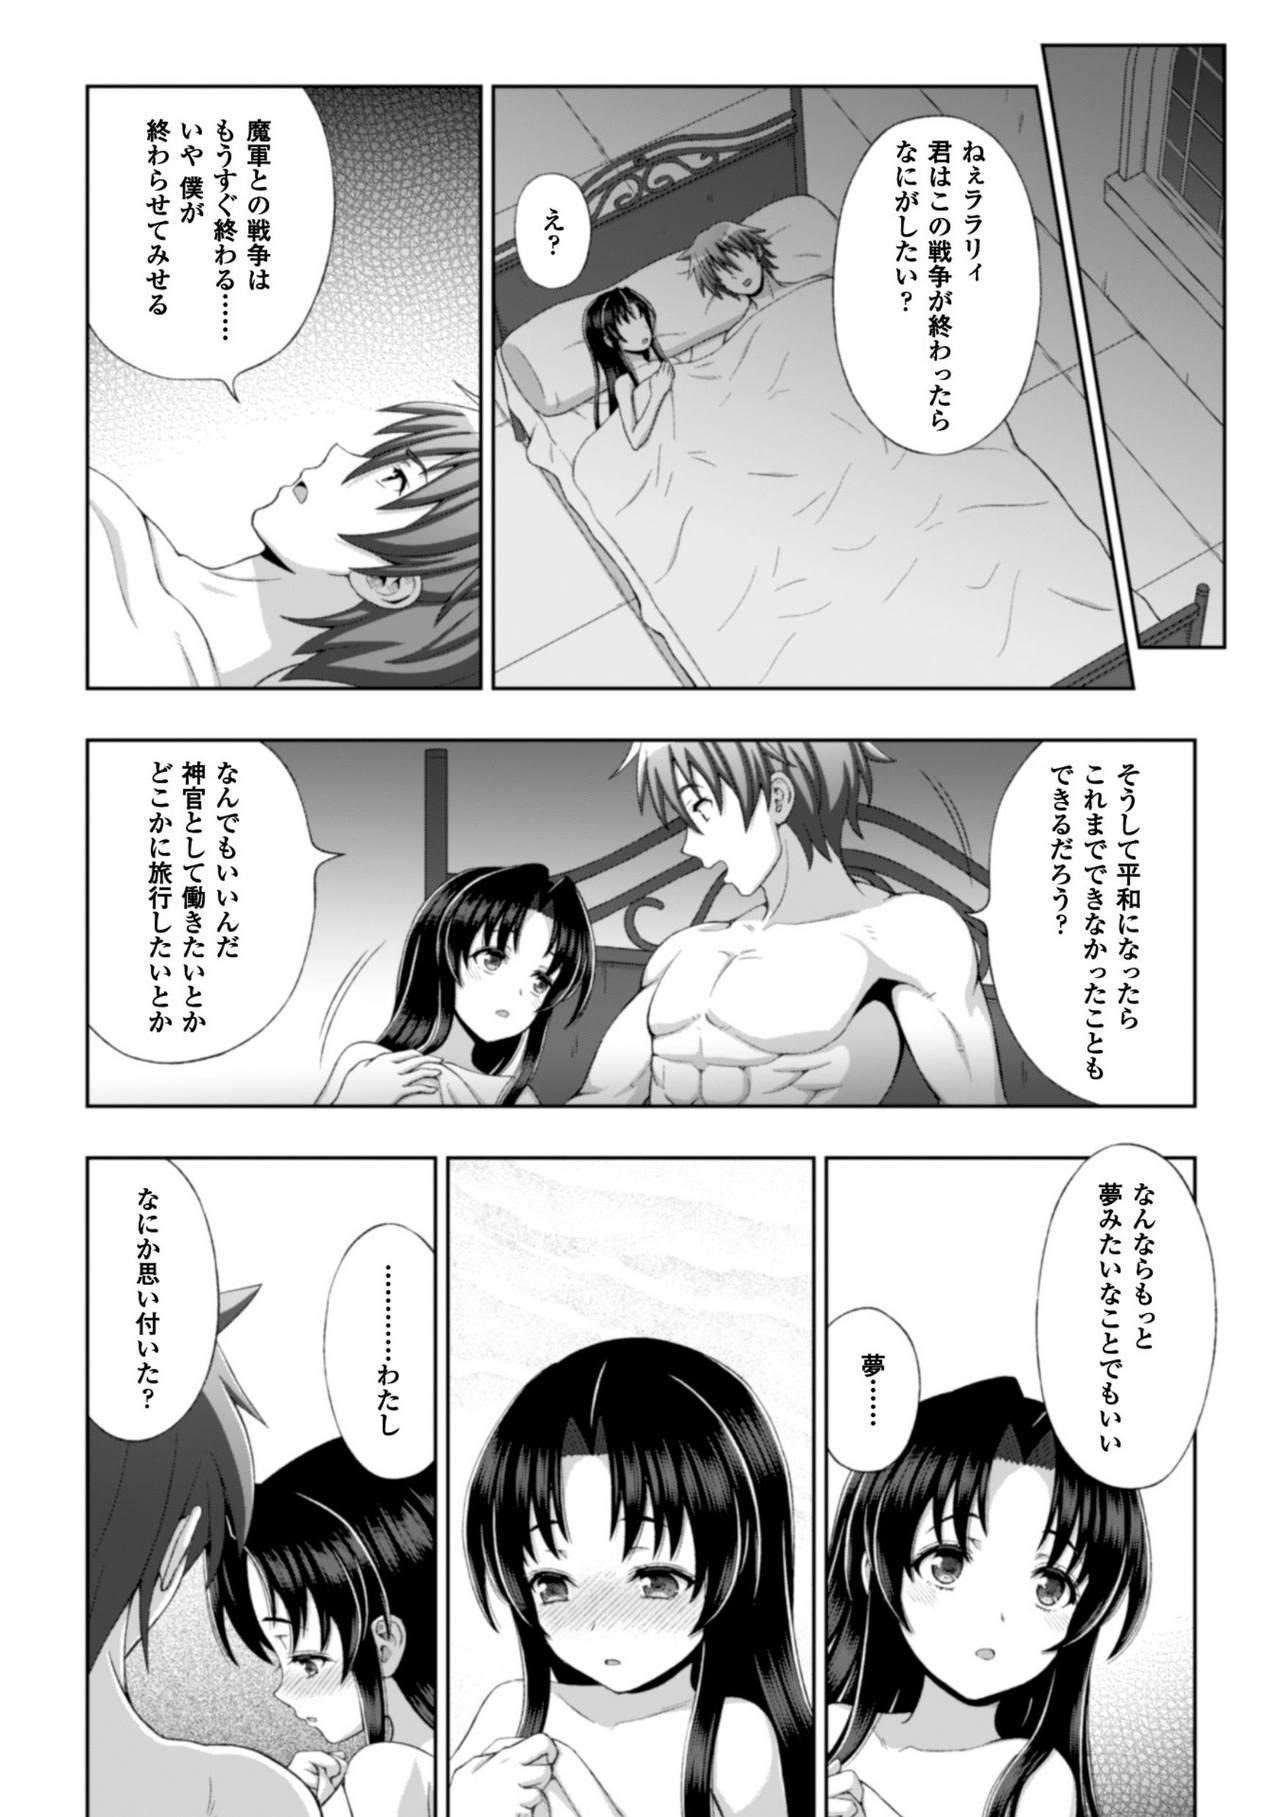 Seigi no Heroine Kangoku File Vol. 8 21